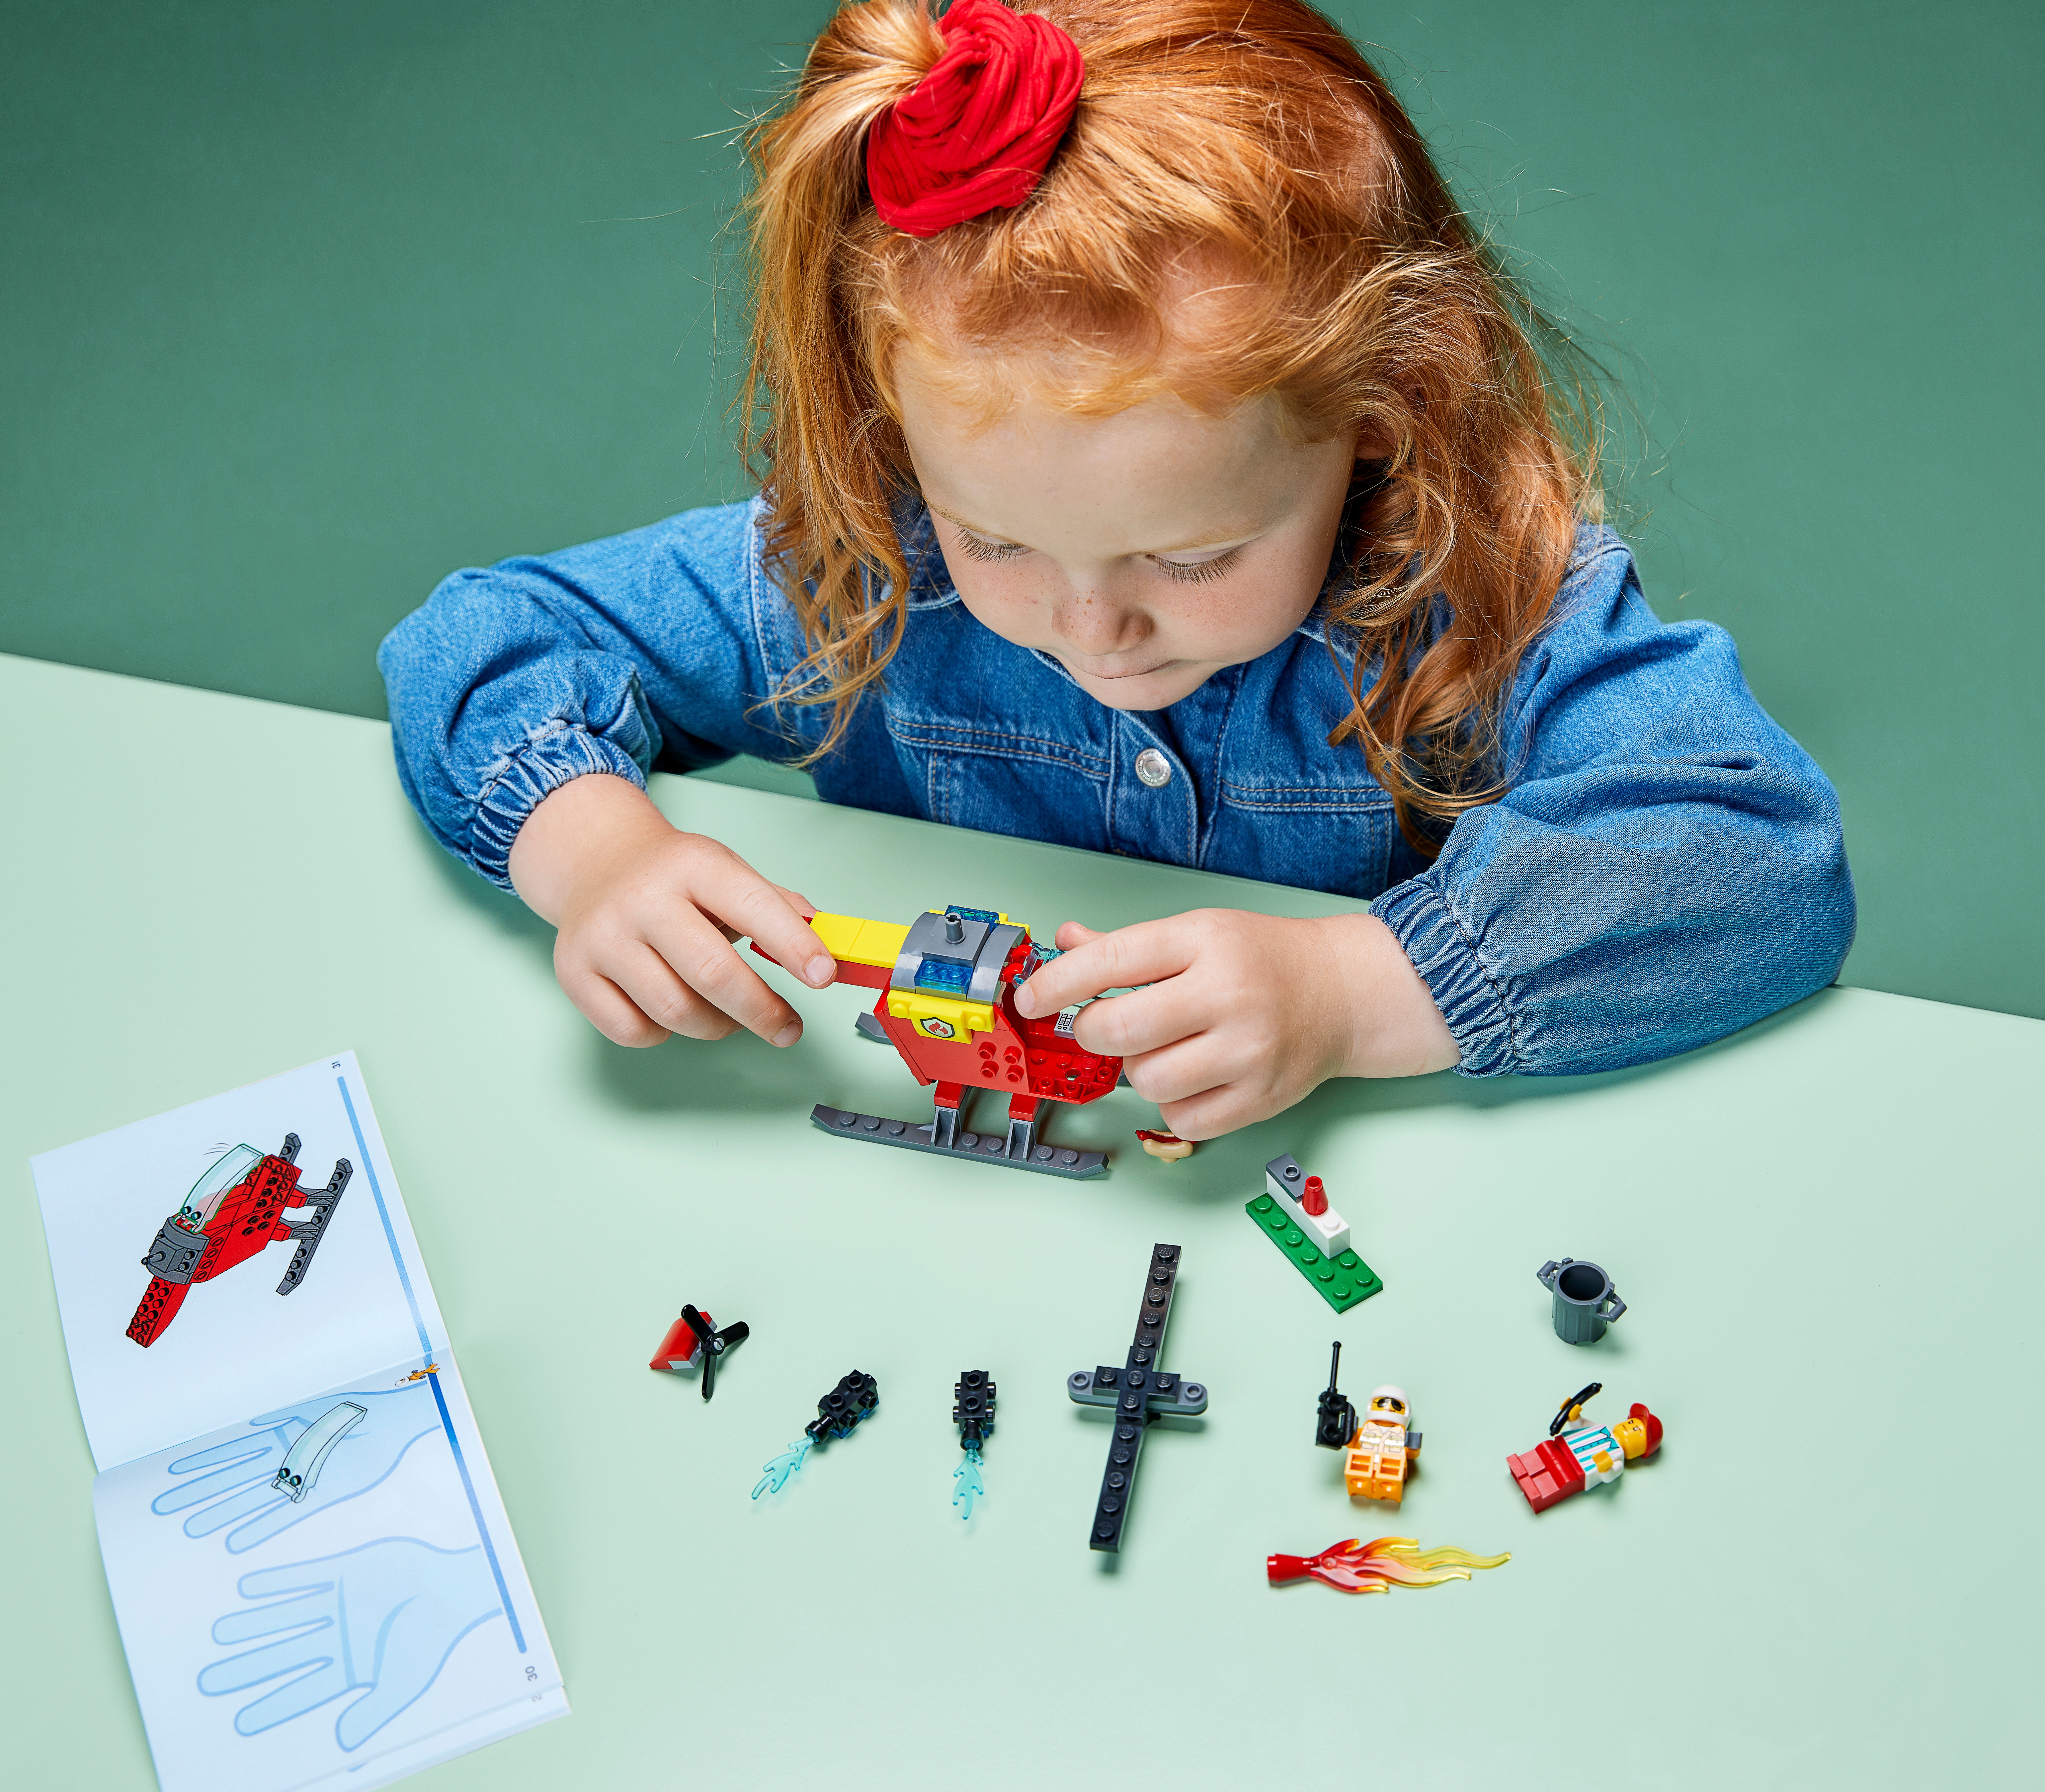 4才のお子さま向けに最適な知育玩具 |レゴ®ショップ公式オンラインストアJP